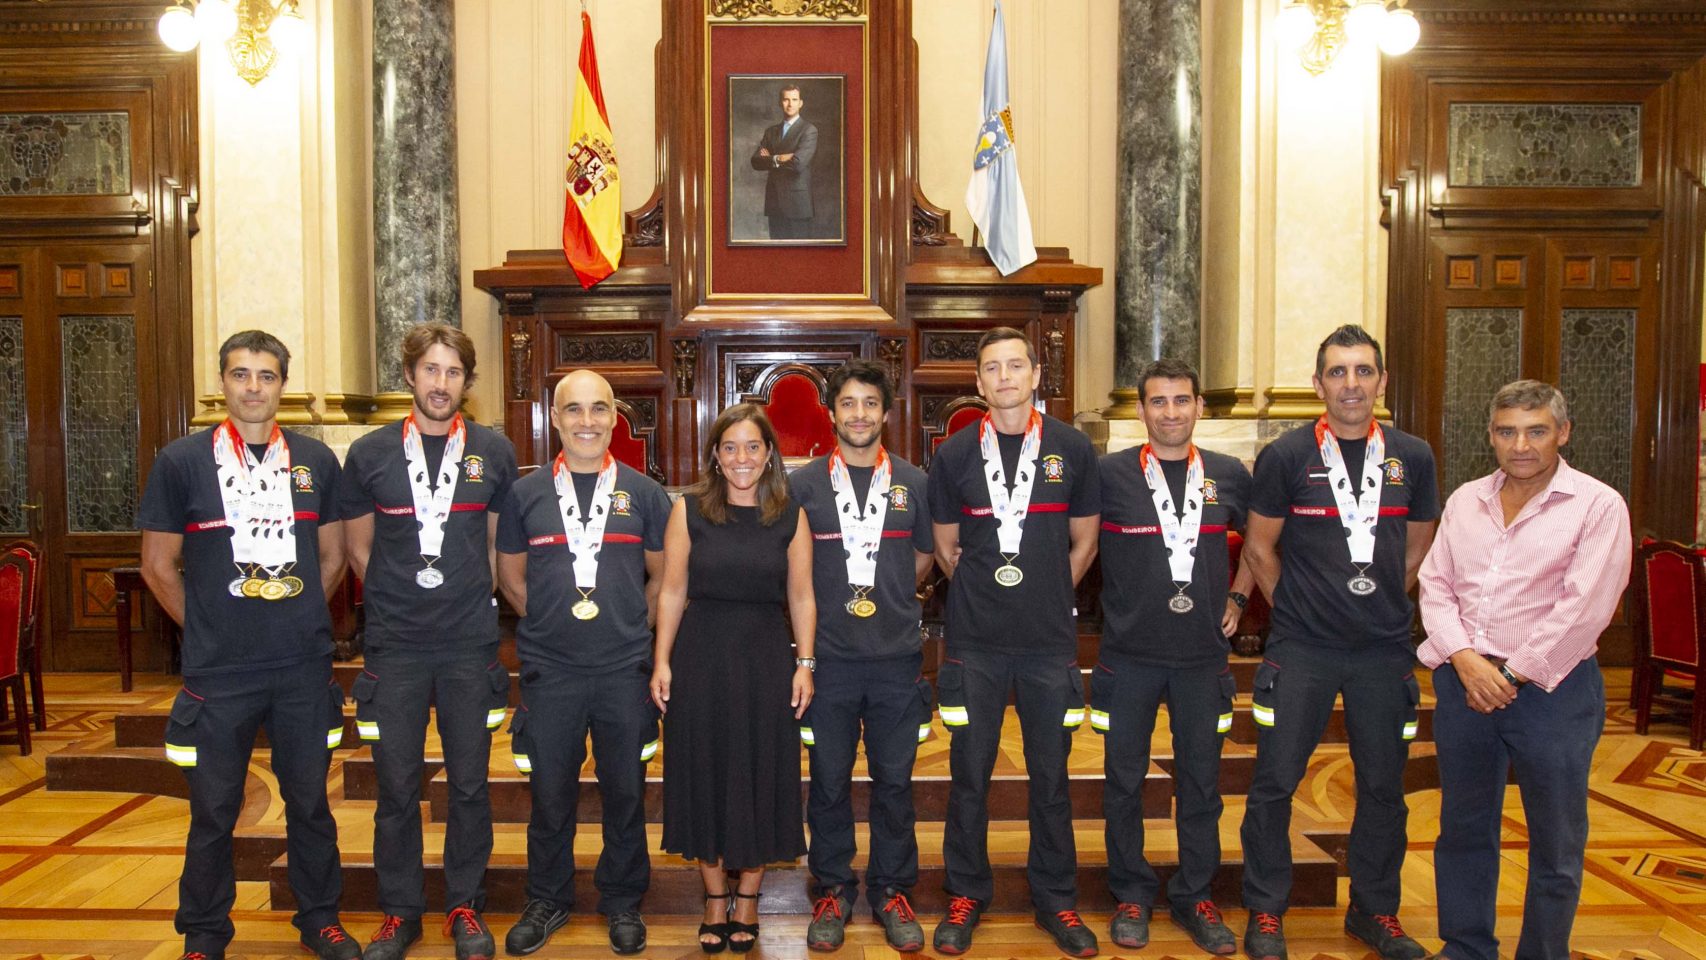 La alcaldesa recibió hoy a los medallistas en María Pita